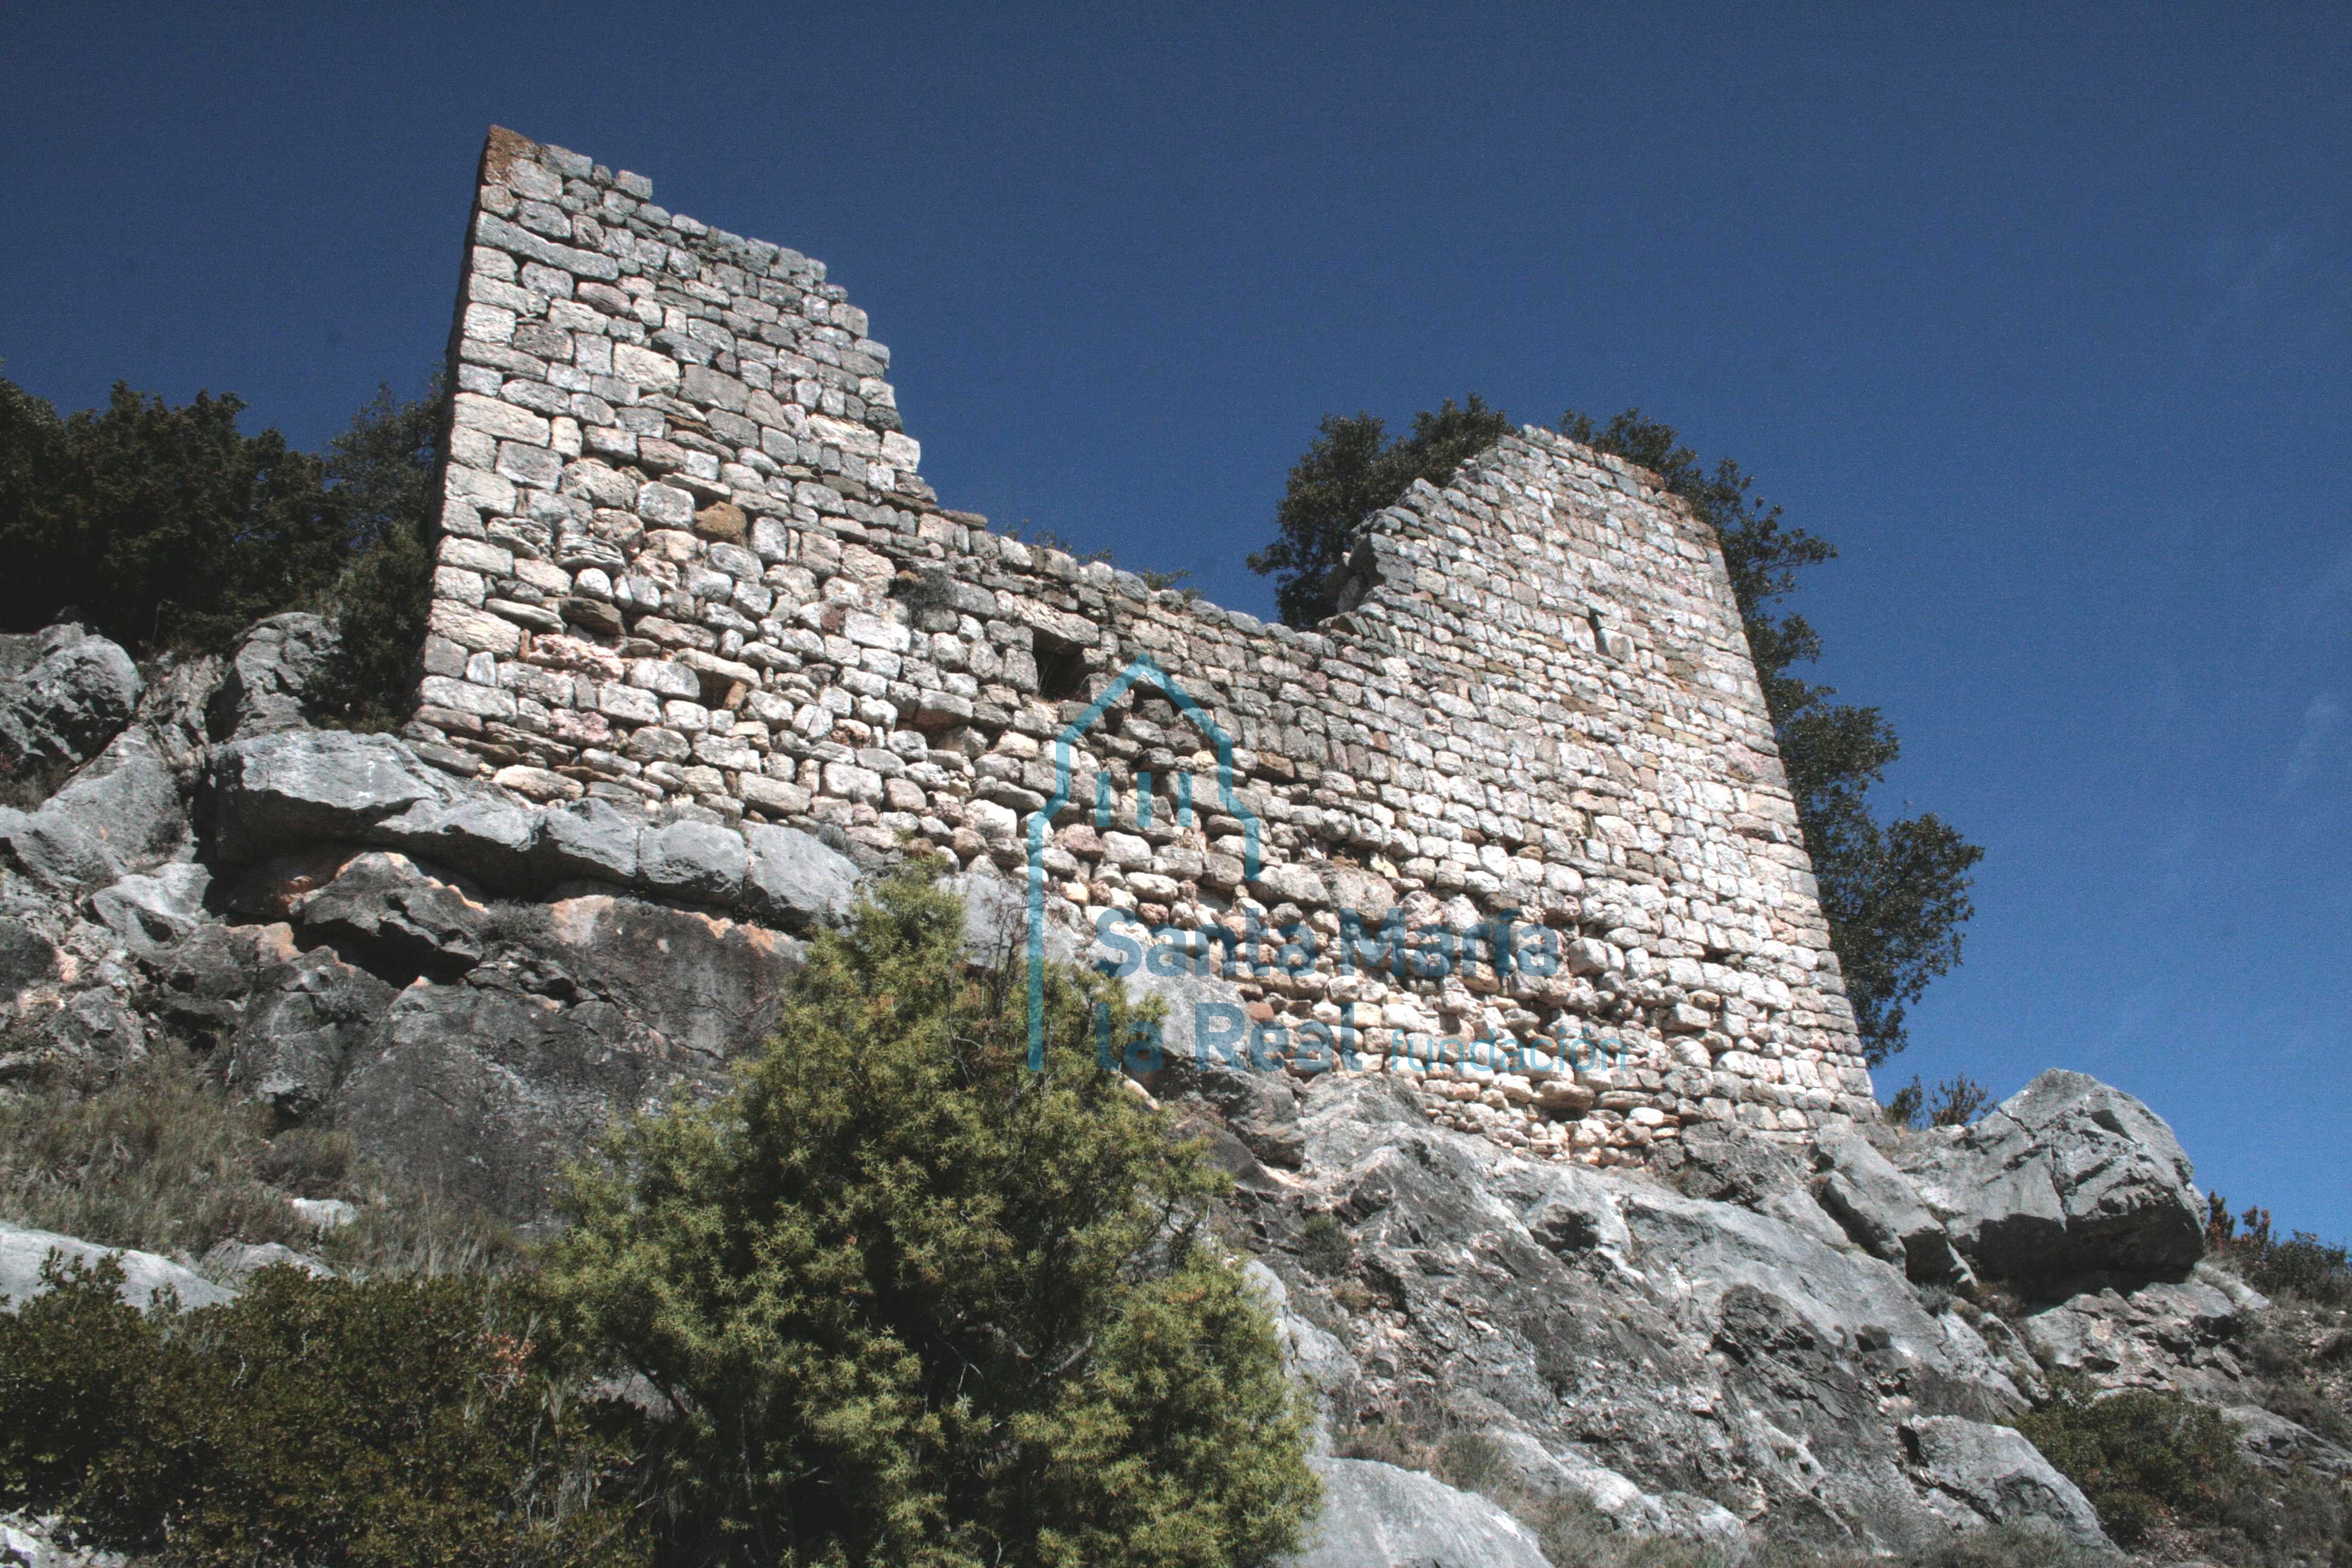 Muro del castillo